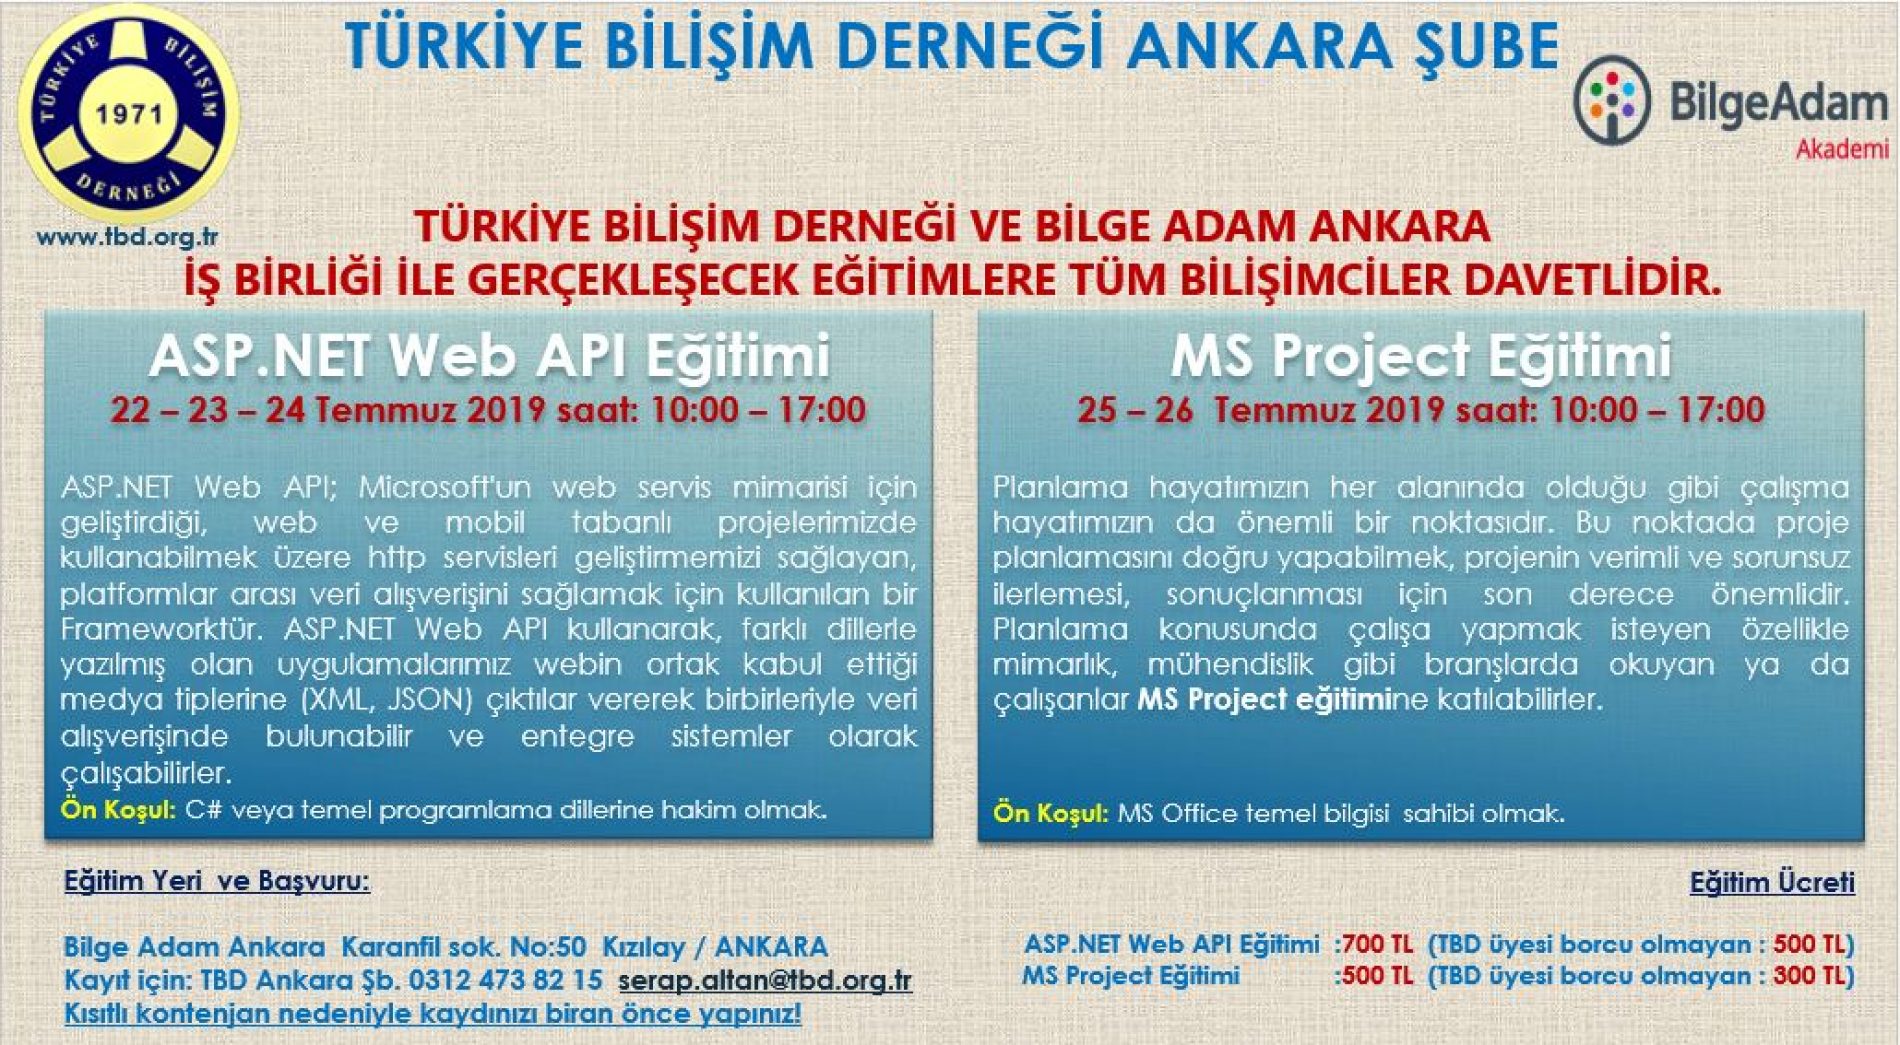 Türkiye Bilişim Derneği ve Bilge Adam Ankara İşbirliği ile Gerçekleşecek Eğitimlerimize Kayıtlarınızı Bekliyoruz!